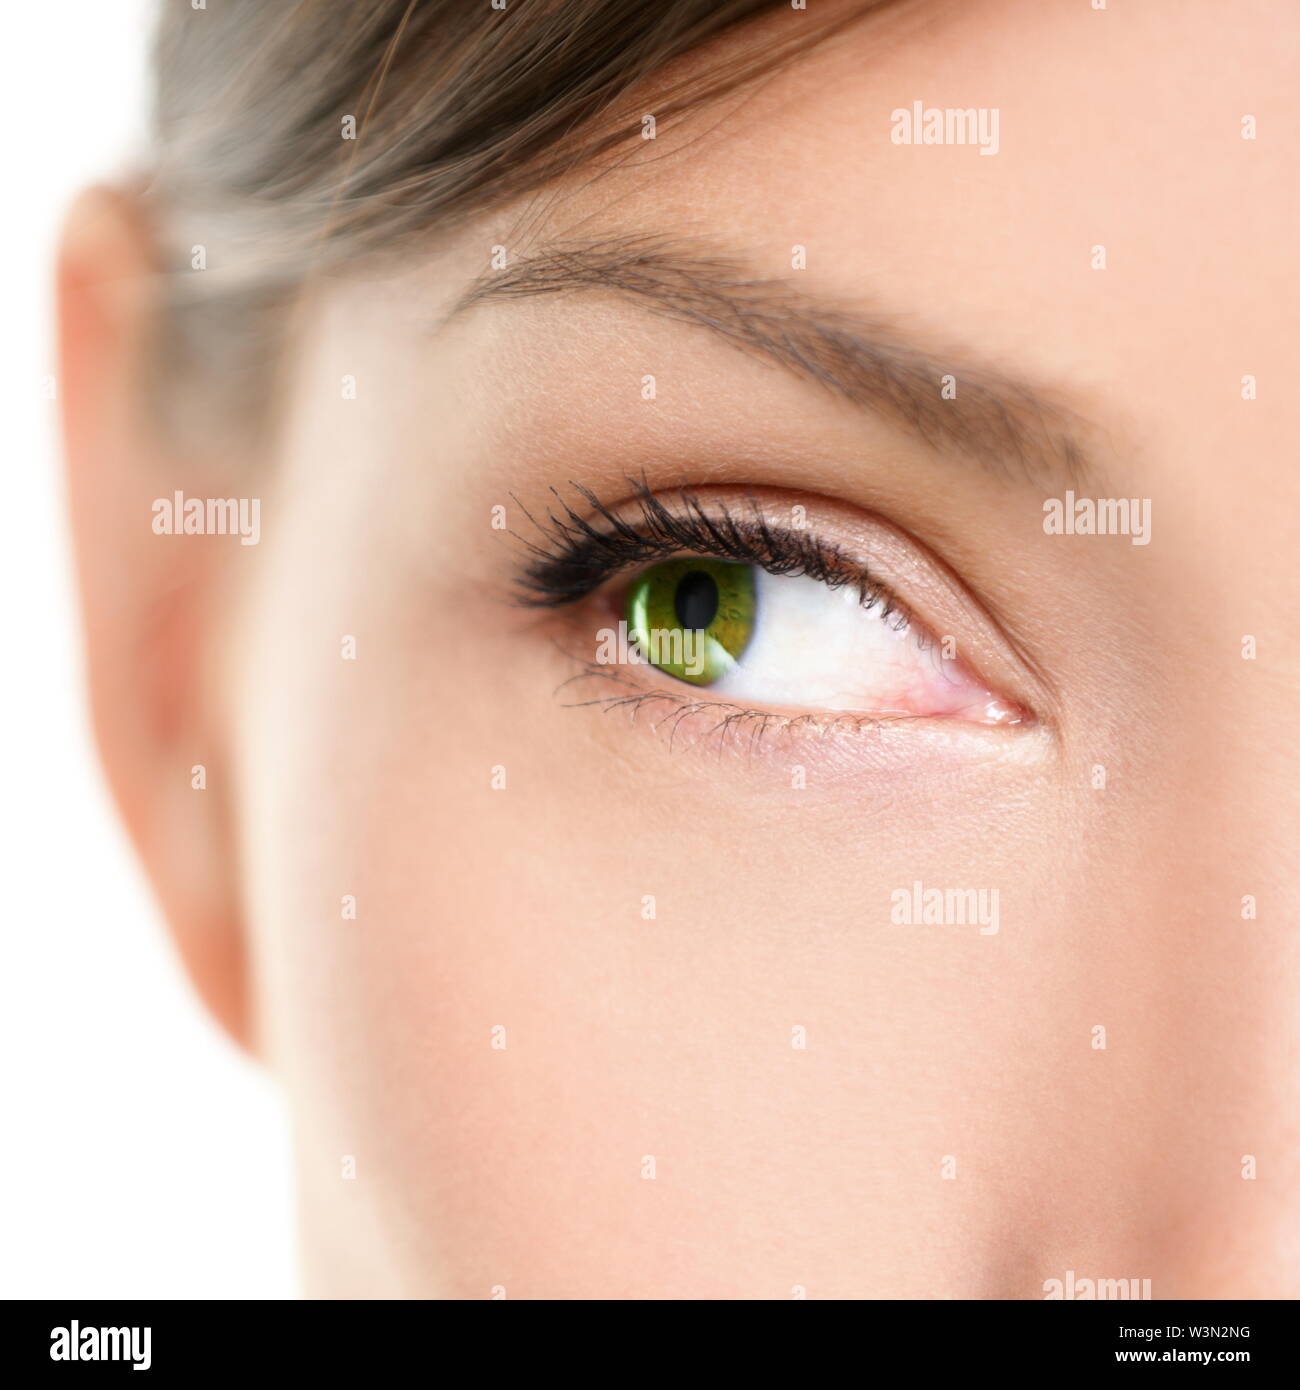 Augen schließen - bis auf die Seite. Closeup Portrait von weiblichen eyee mit schönen grünen Farbe seitwärts auf leere weiße Kopie Raum. Gemischte Rasse asiatischen kaukasischen Frauen Modell. Stockfoto